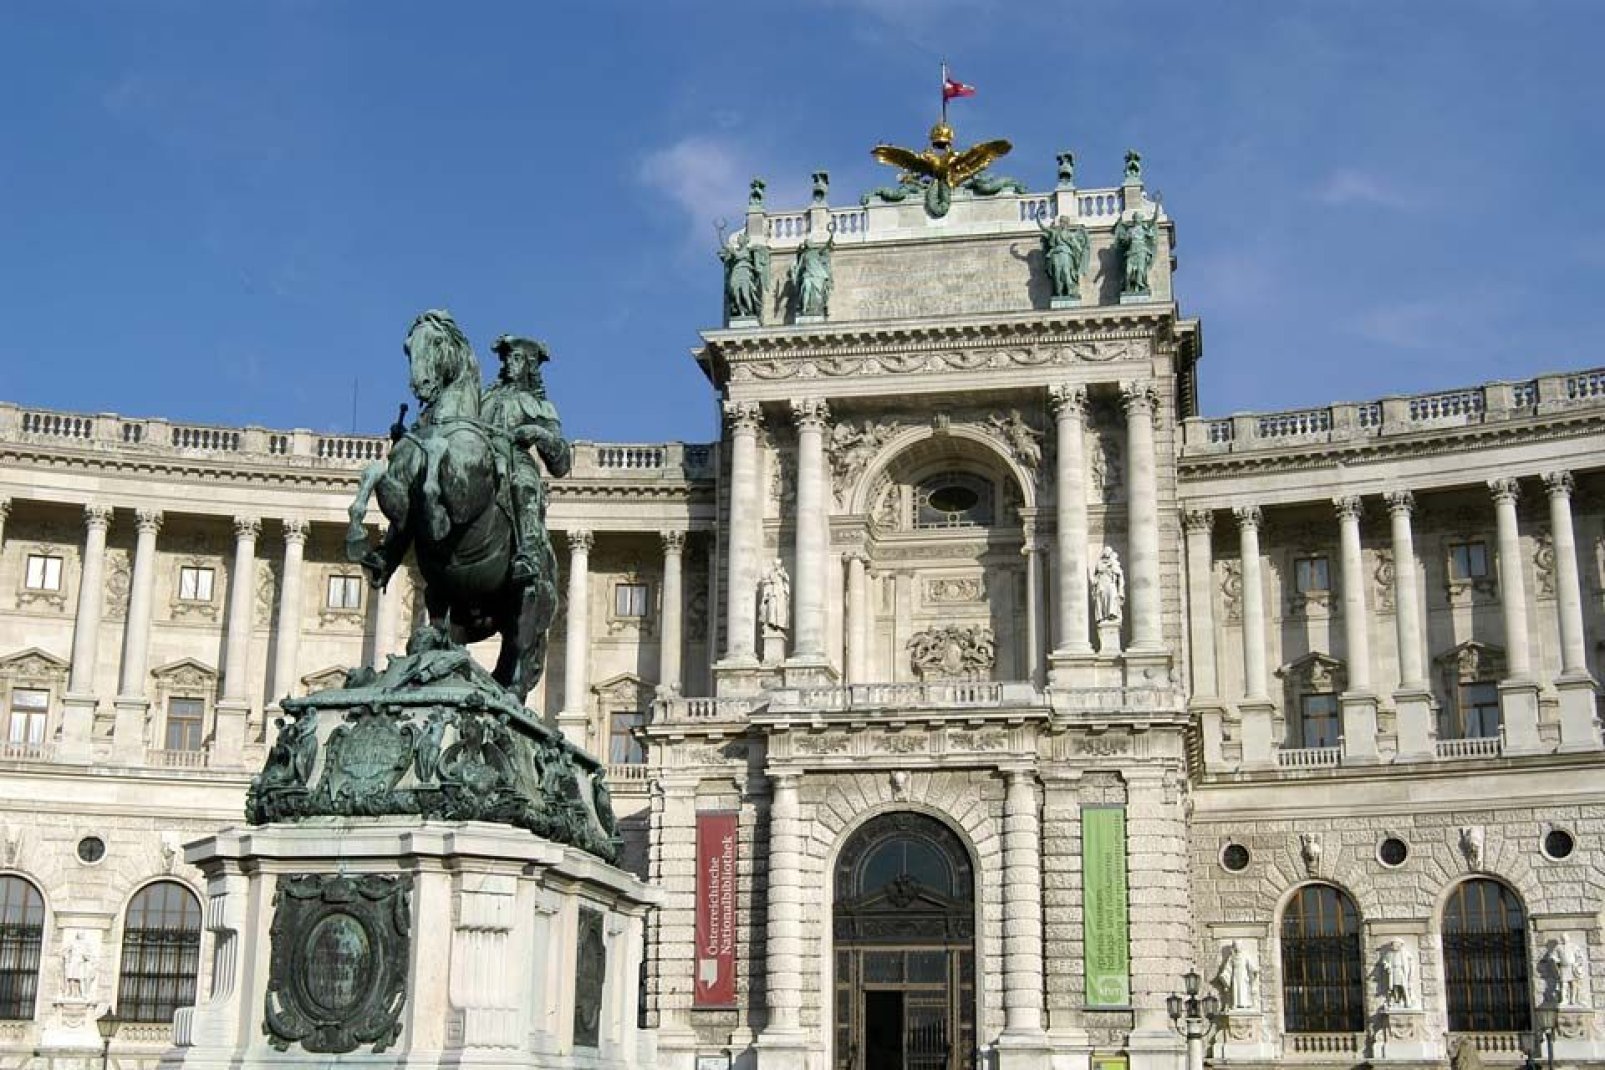 Diese buchstäbliche "Stadt in der Stadt" umfasst insgesamt 18 Gebäude, darunter die kaiserlichen Wohnungen und den Sitz des österreichischen Bundespräsidenten.